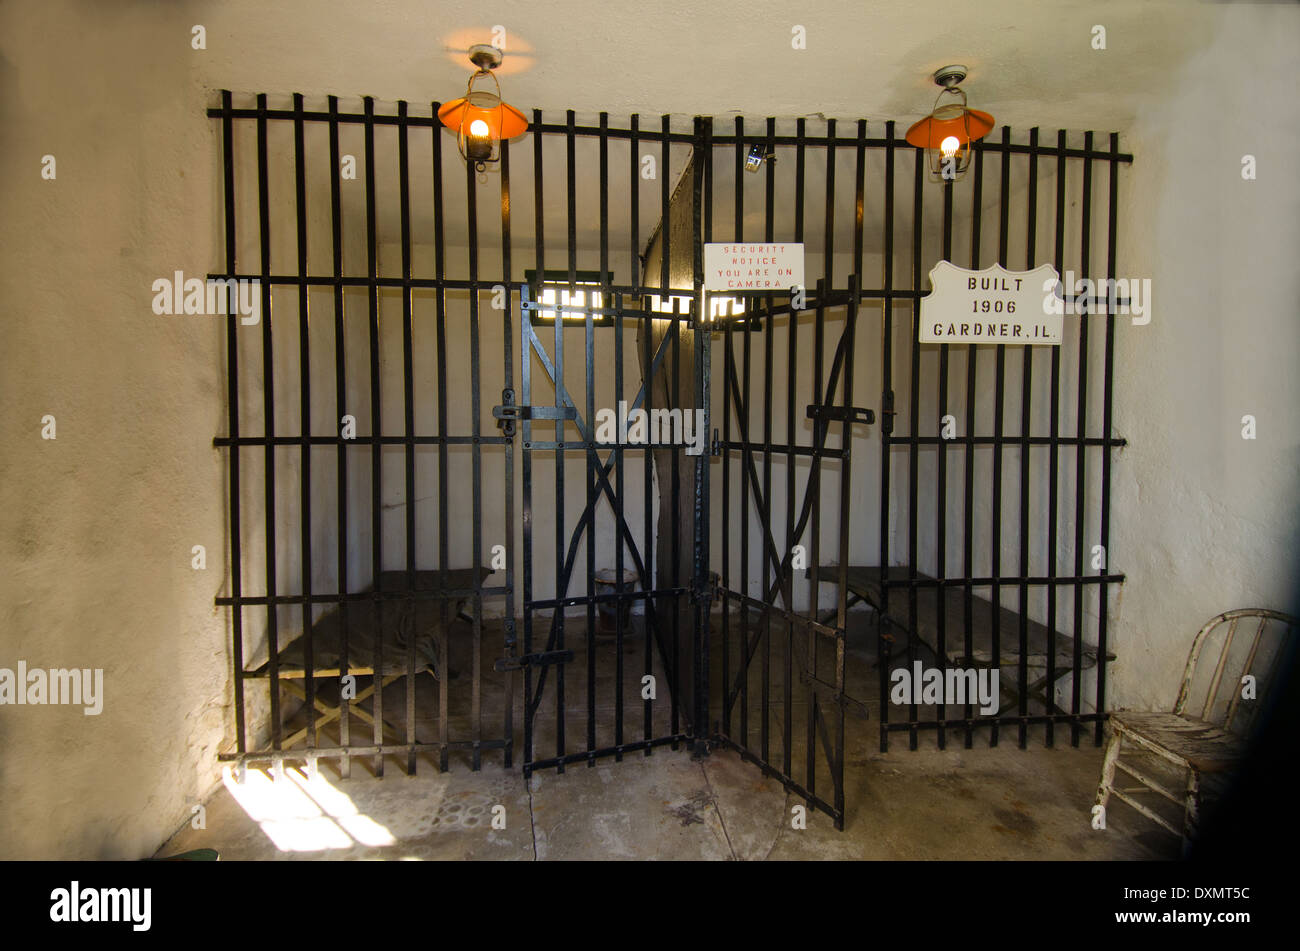 Die Zelle im Gefängnis von zwei Zellen, Baujahr 1906, eine beliebte Attraktion in Gardner, Illinois, einer Stadt entlang der Route 66. Stockfoto